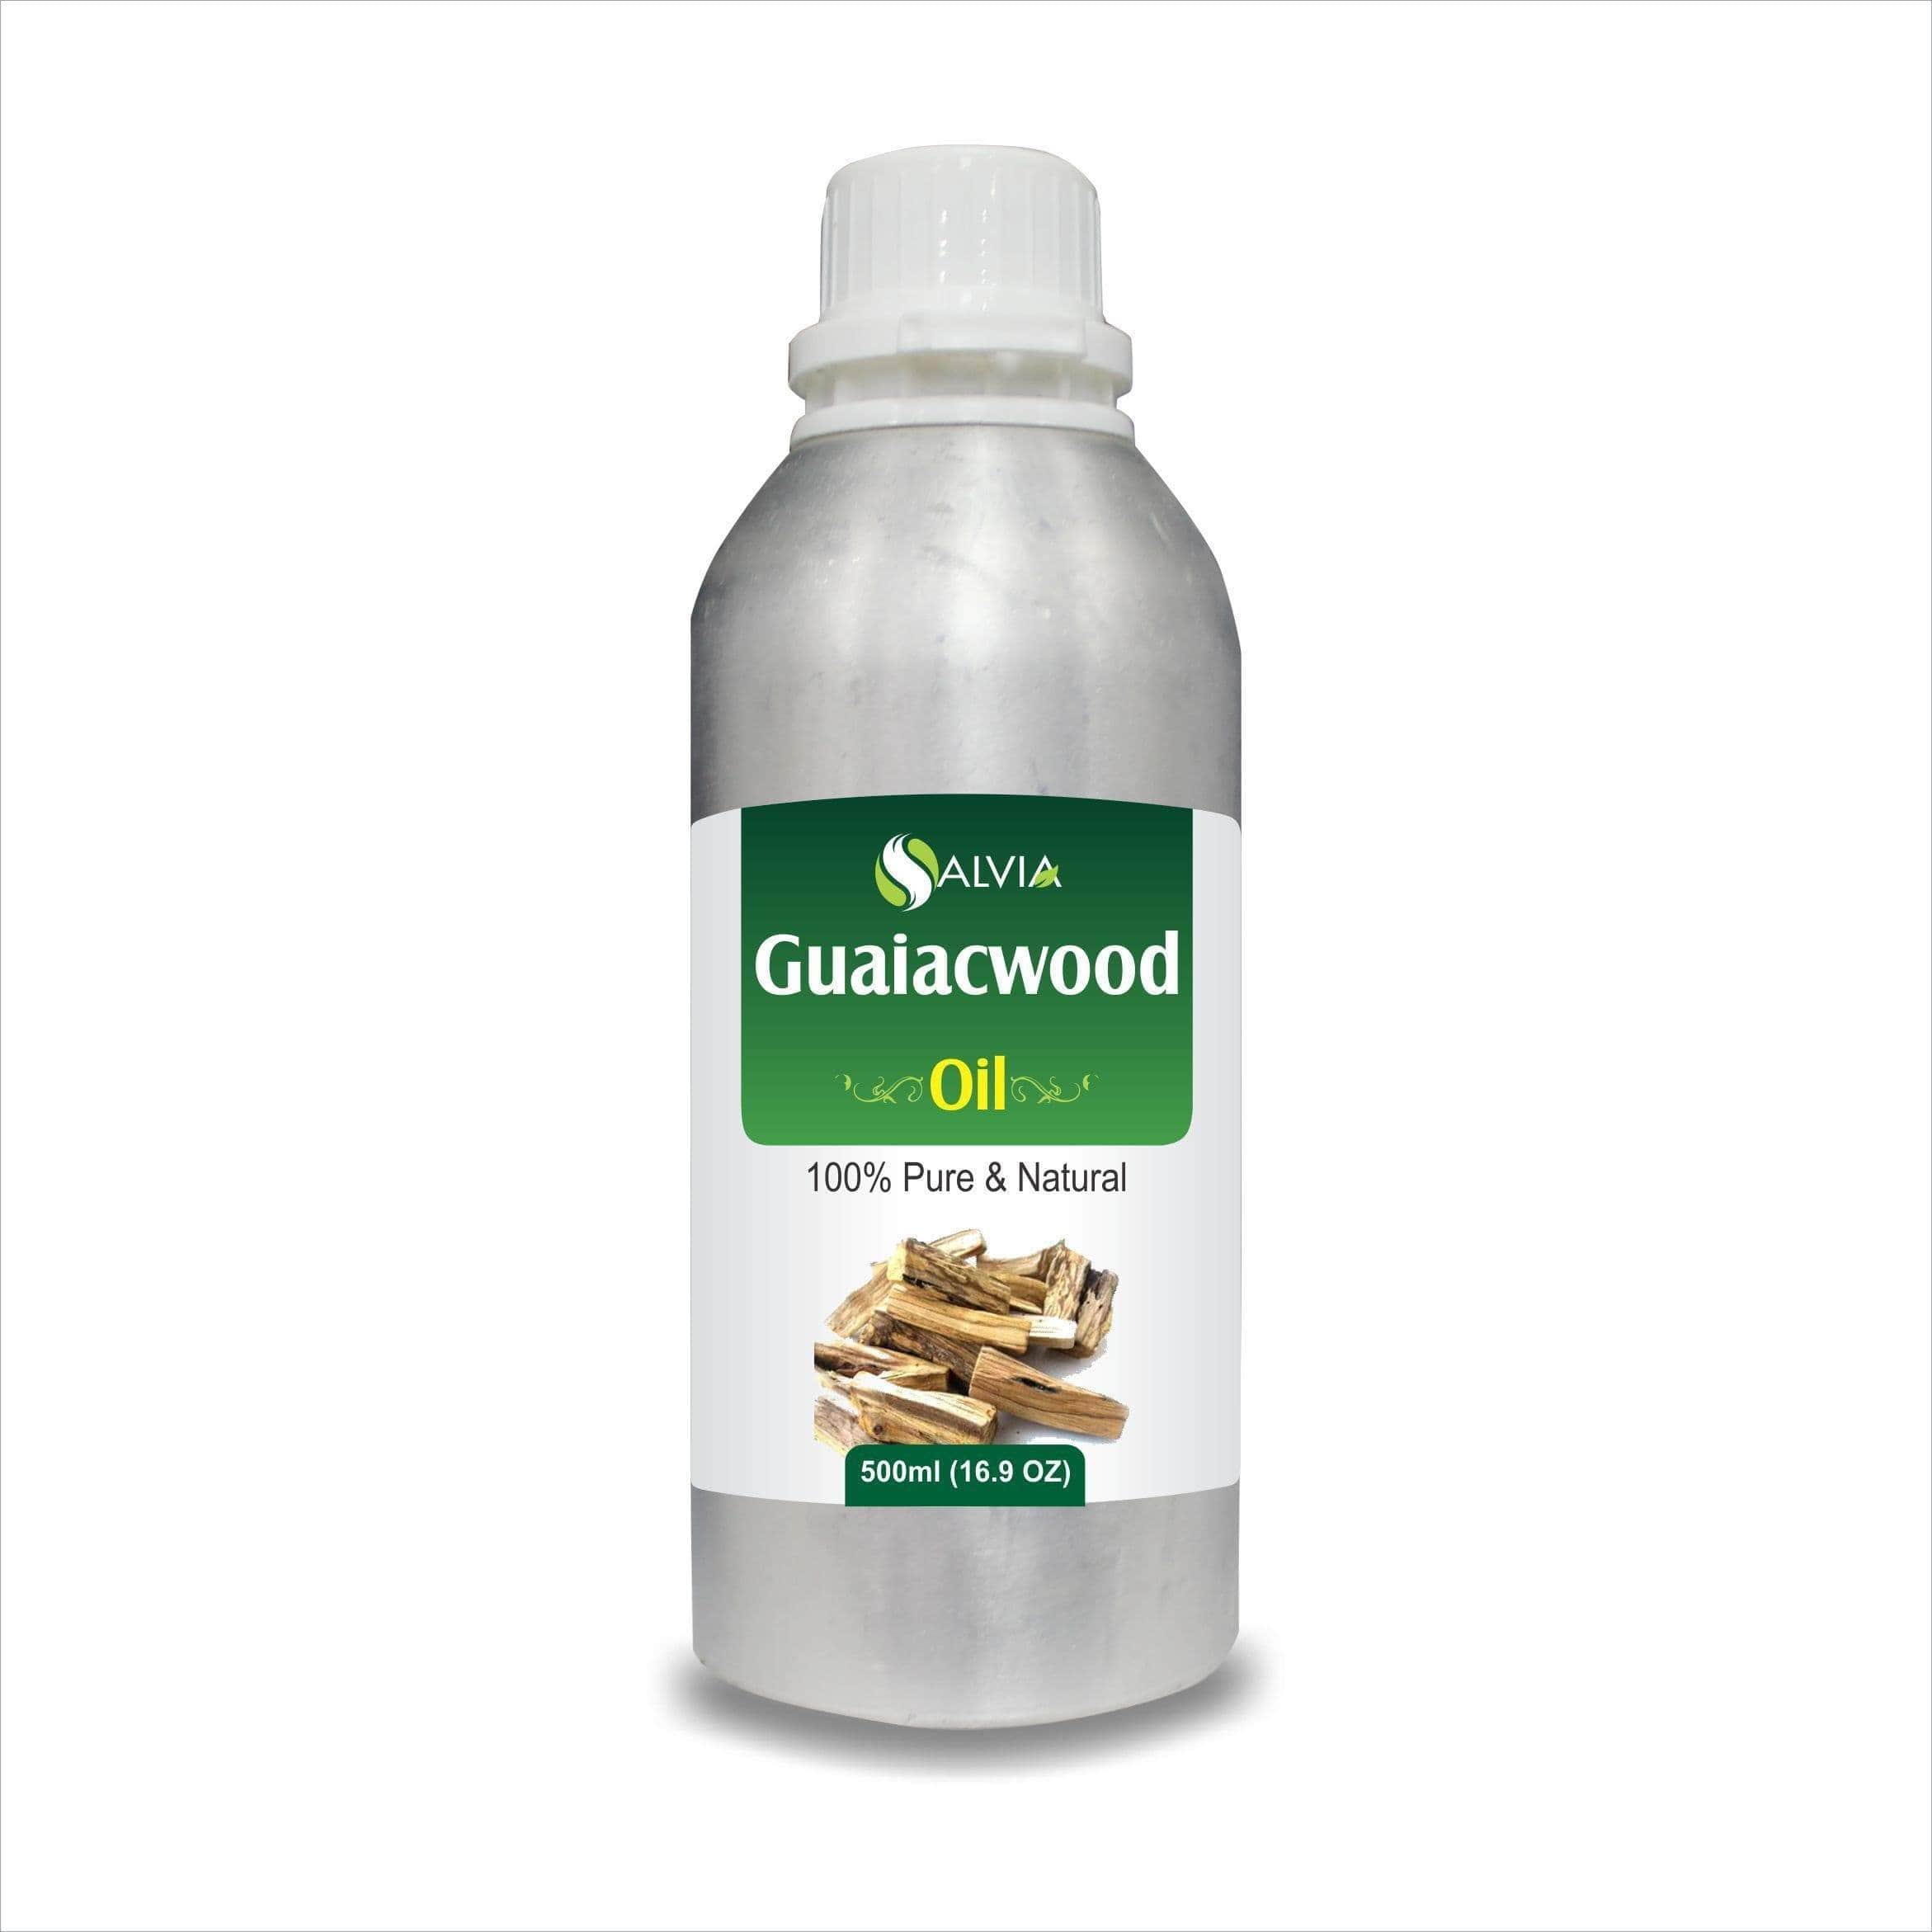 guaiac wood oil benefits